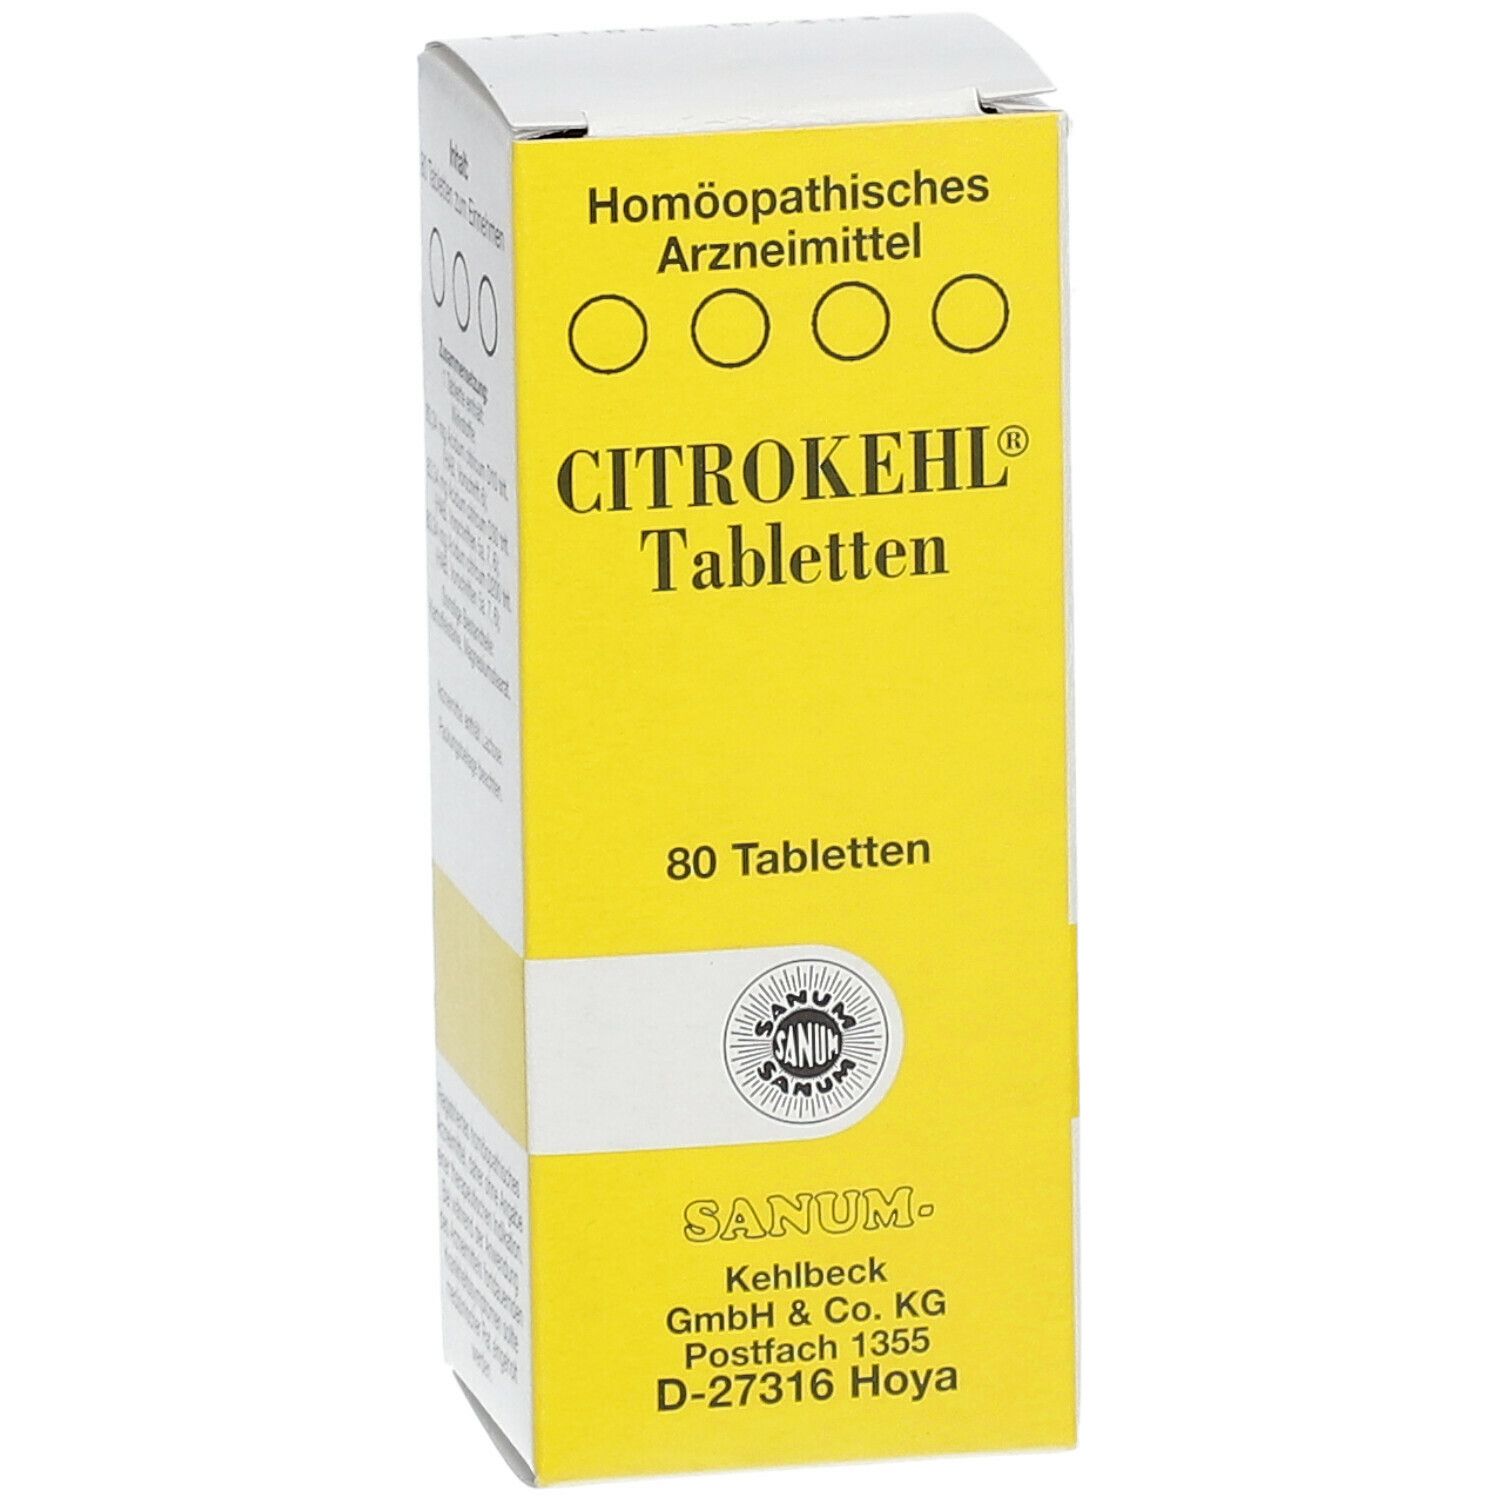 Citrokehl® Tabletten